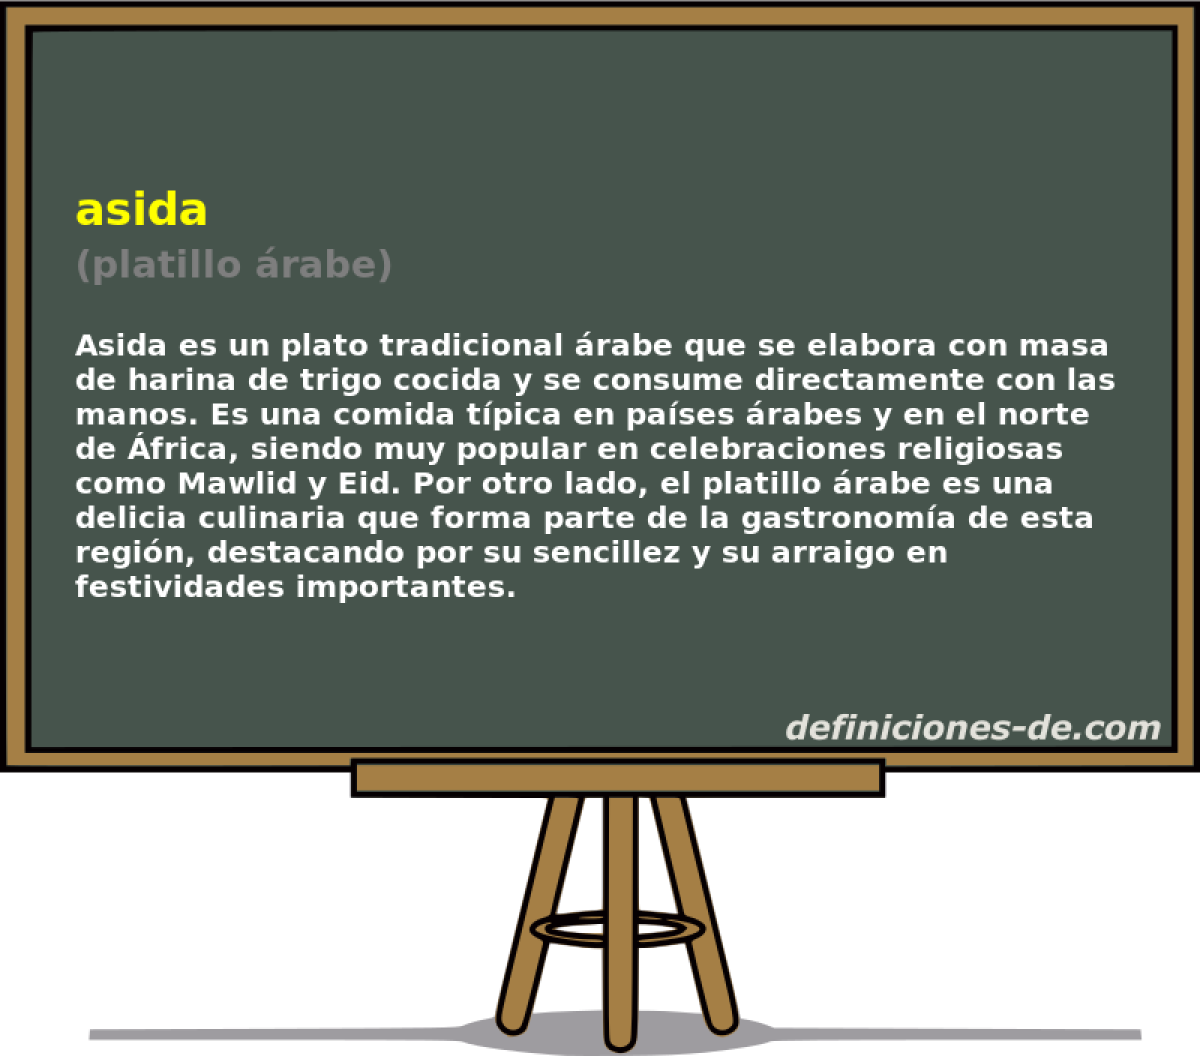 asida (platillo rabe)